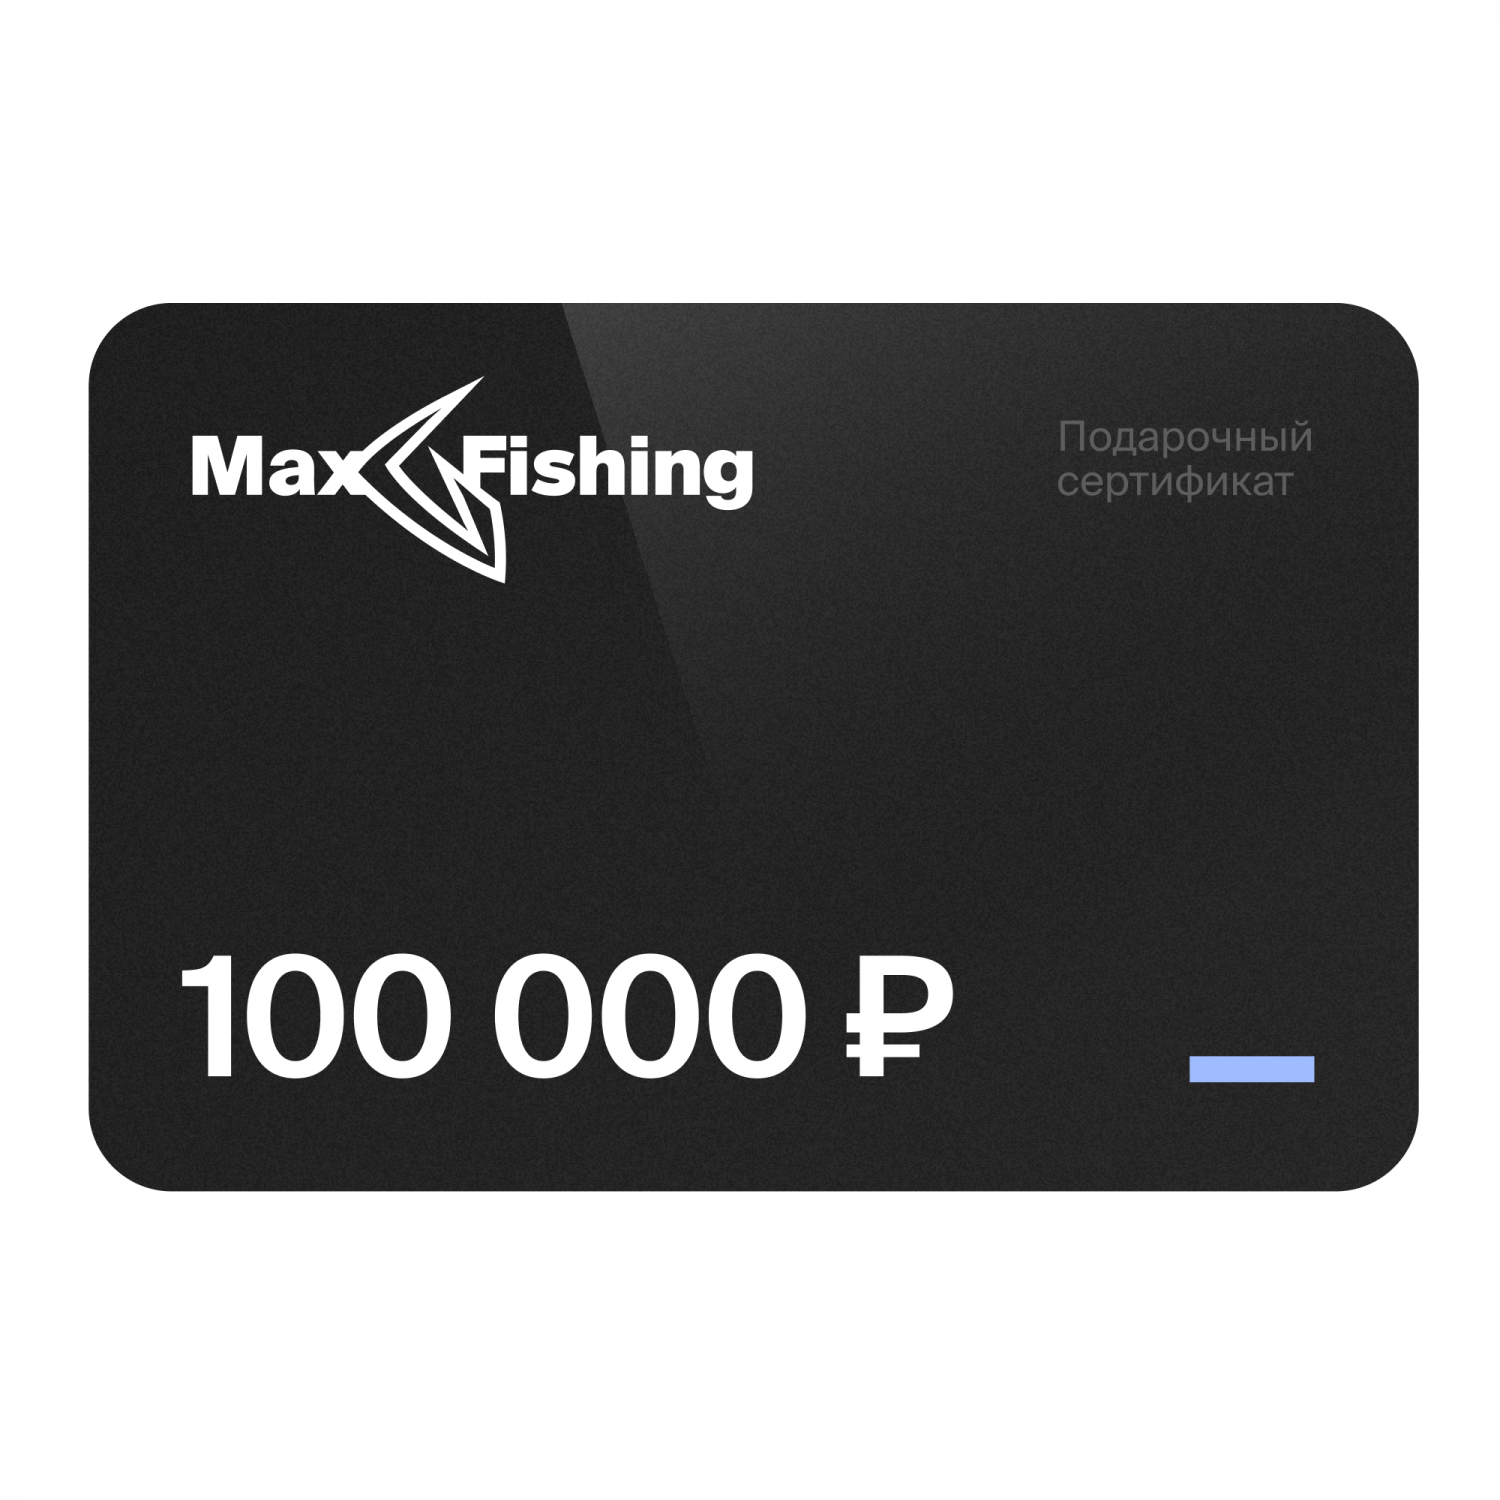 Подарочный сертификат MaxFishing 100 000 ₽ подарочный сертификат mr right на 5 000 рублей